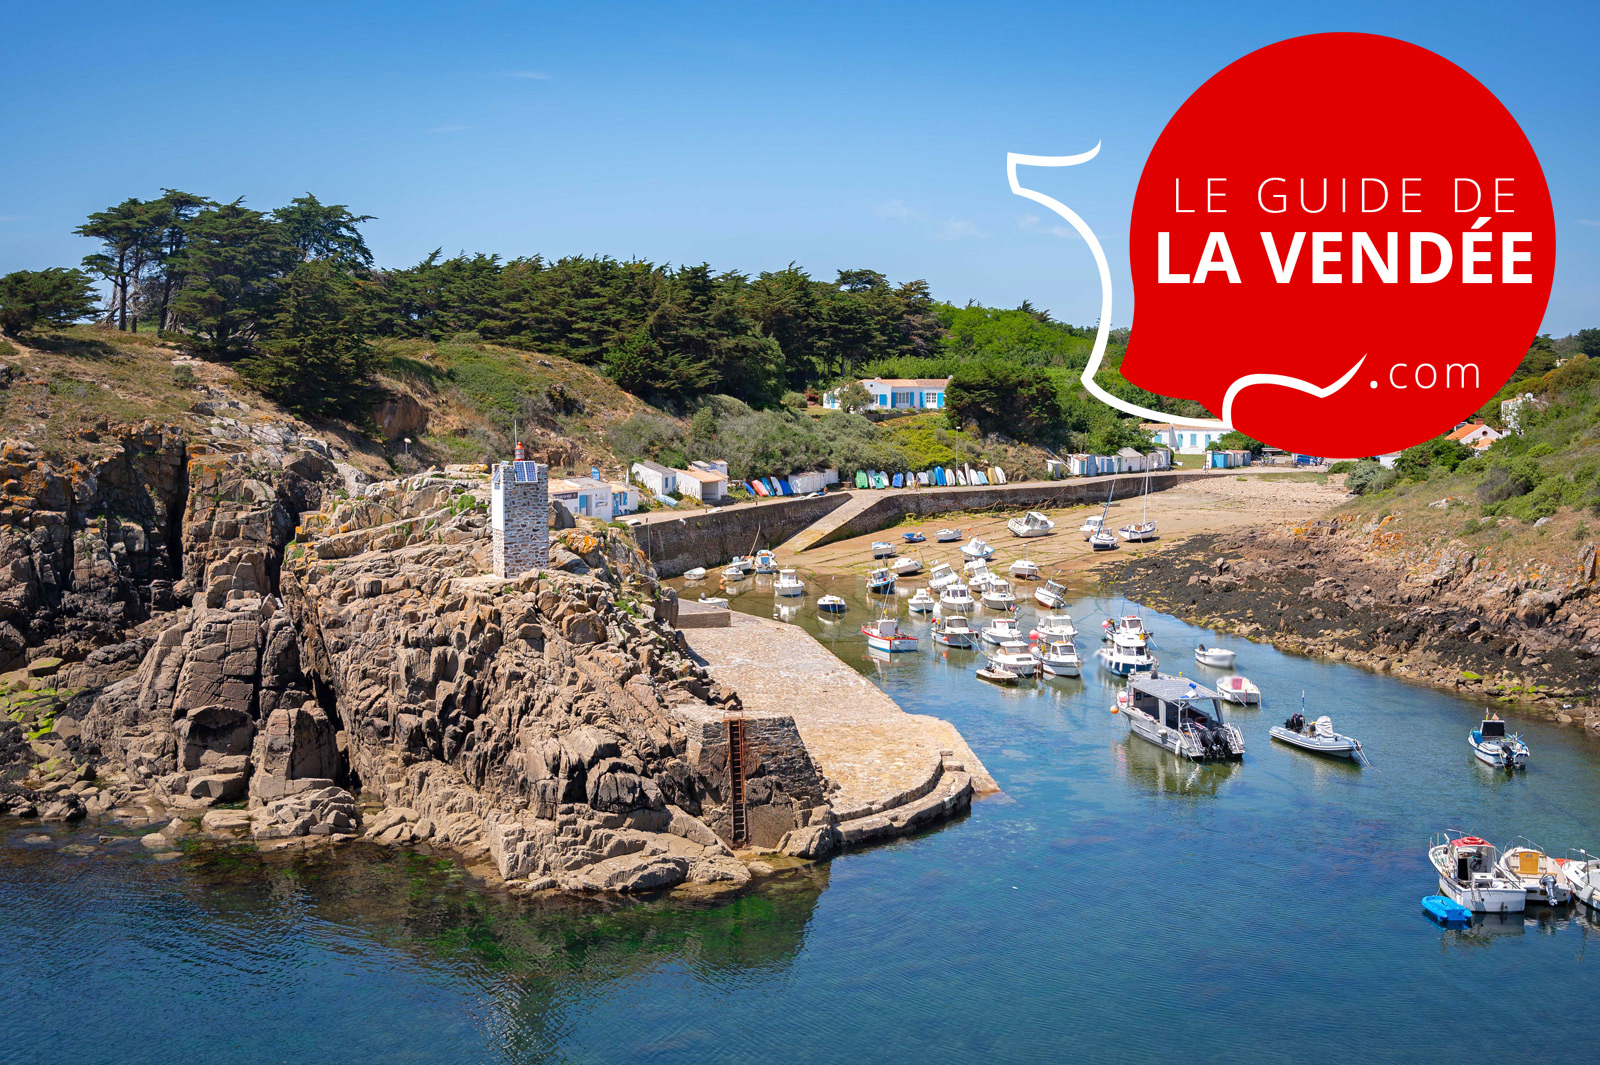 You are currently viewing Notre nouveau guide régional : Le Guide de la Vendée